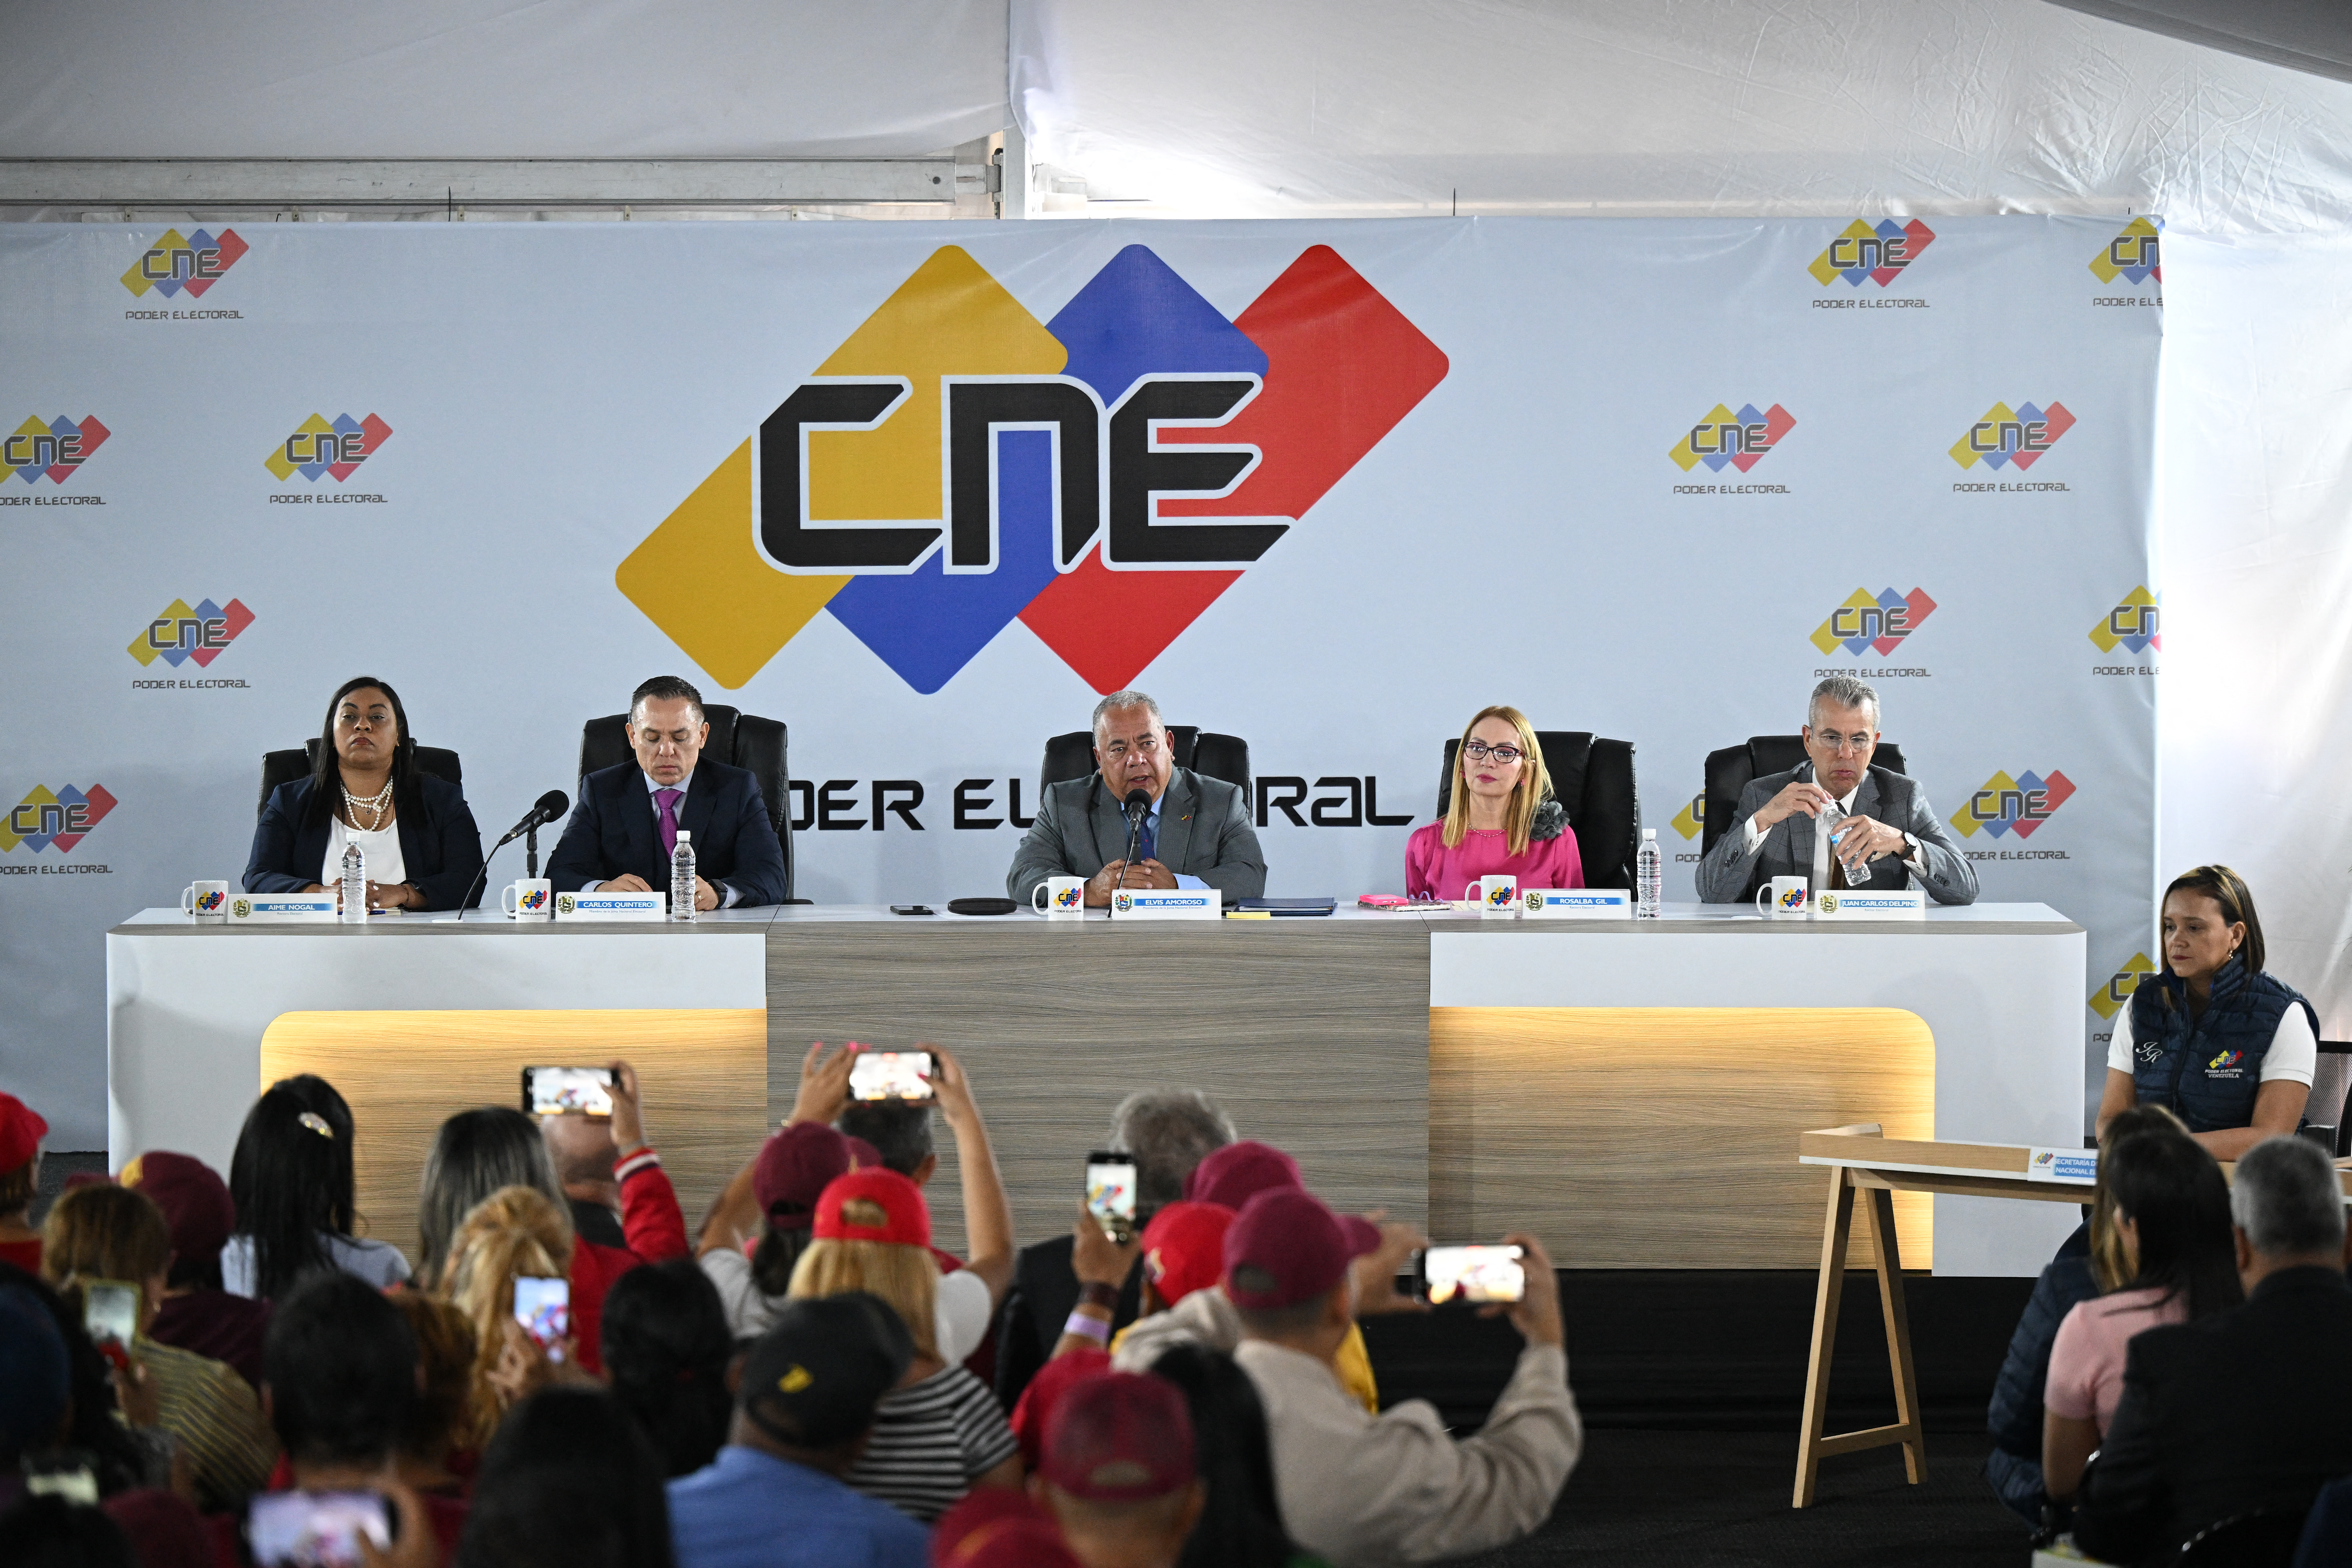 Veto a la observación electoral de UE en Venezuela es una “mala noticia”, según ONG